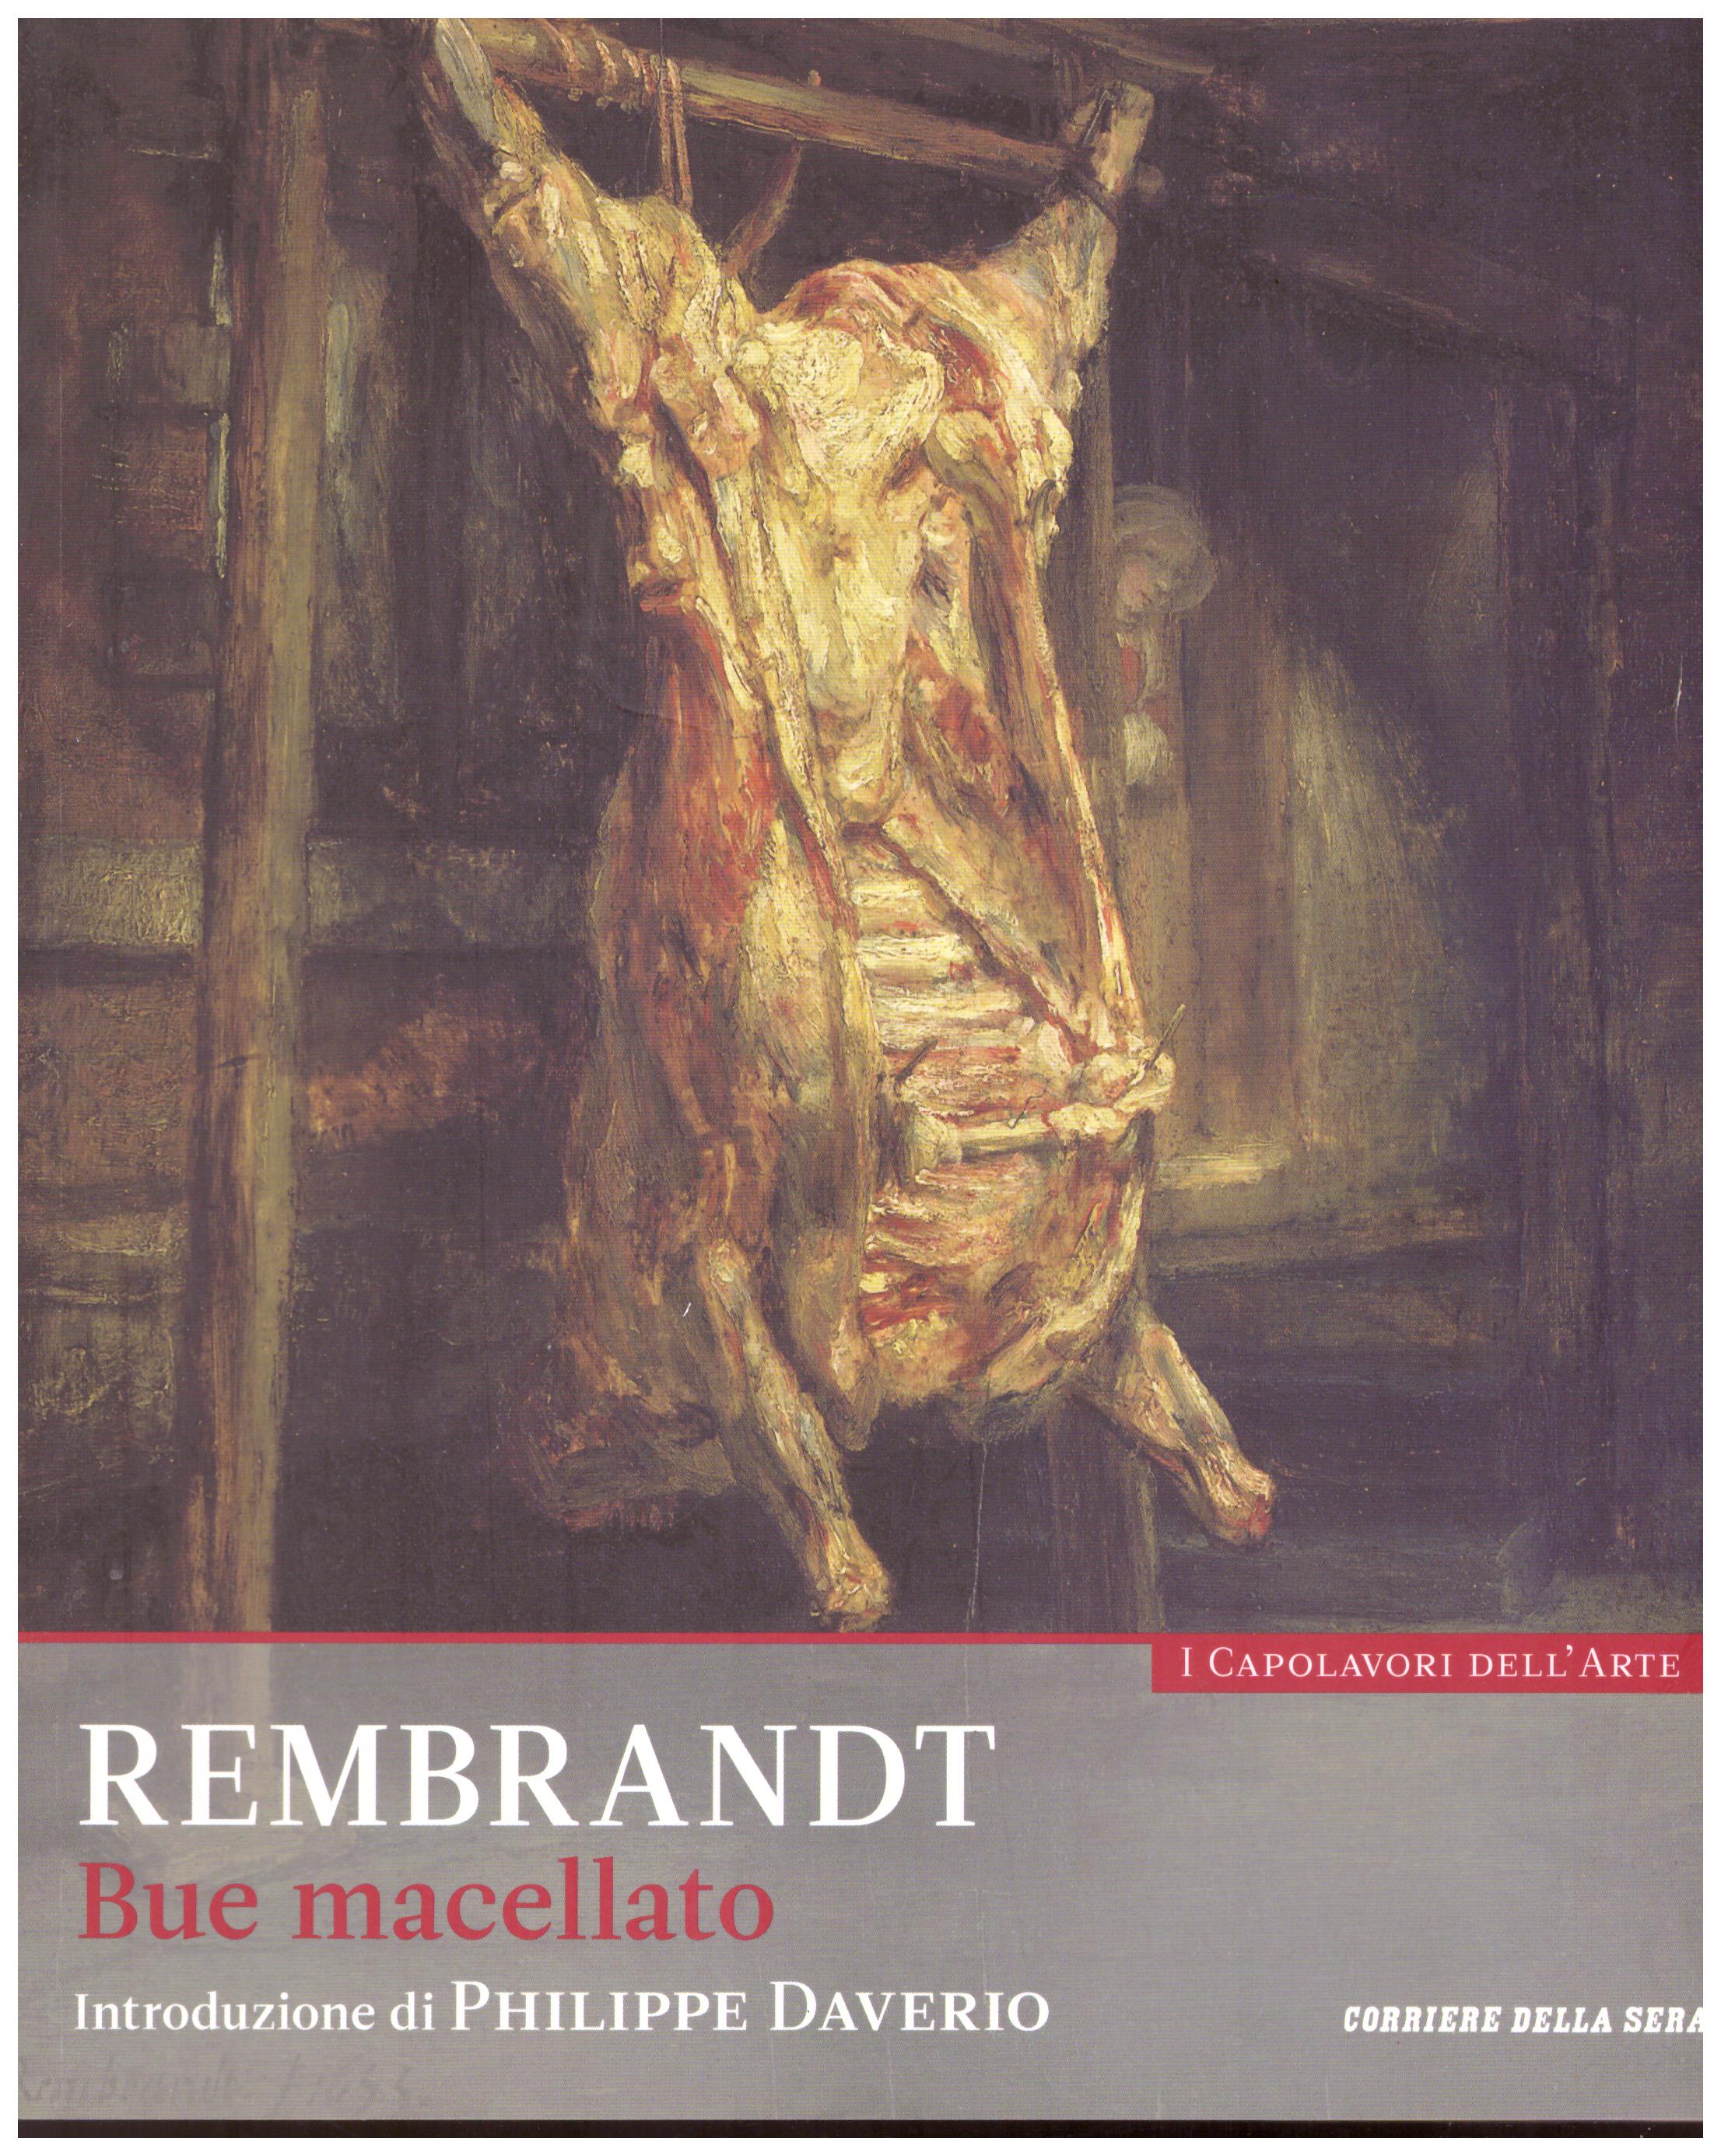 Titolo: I capolavori dell'arte, Rembrandt n.25  Autore : AA.VV.   Editore: education,it/corriere della sera, 2015